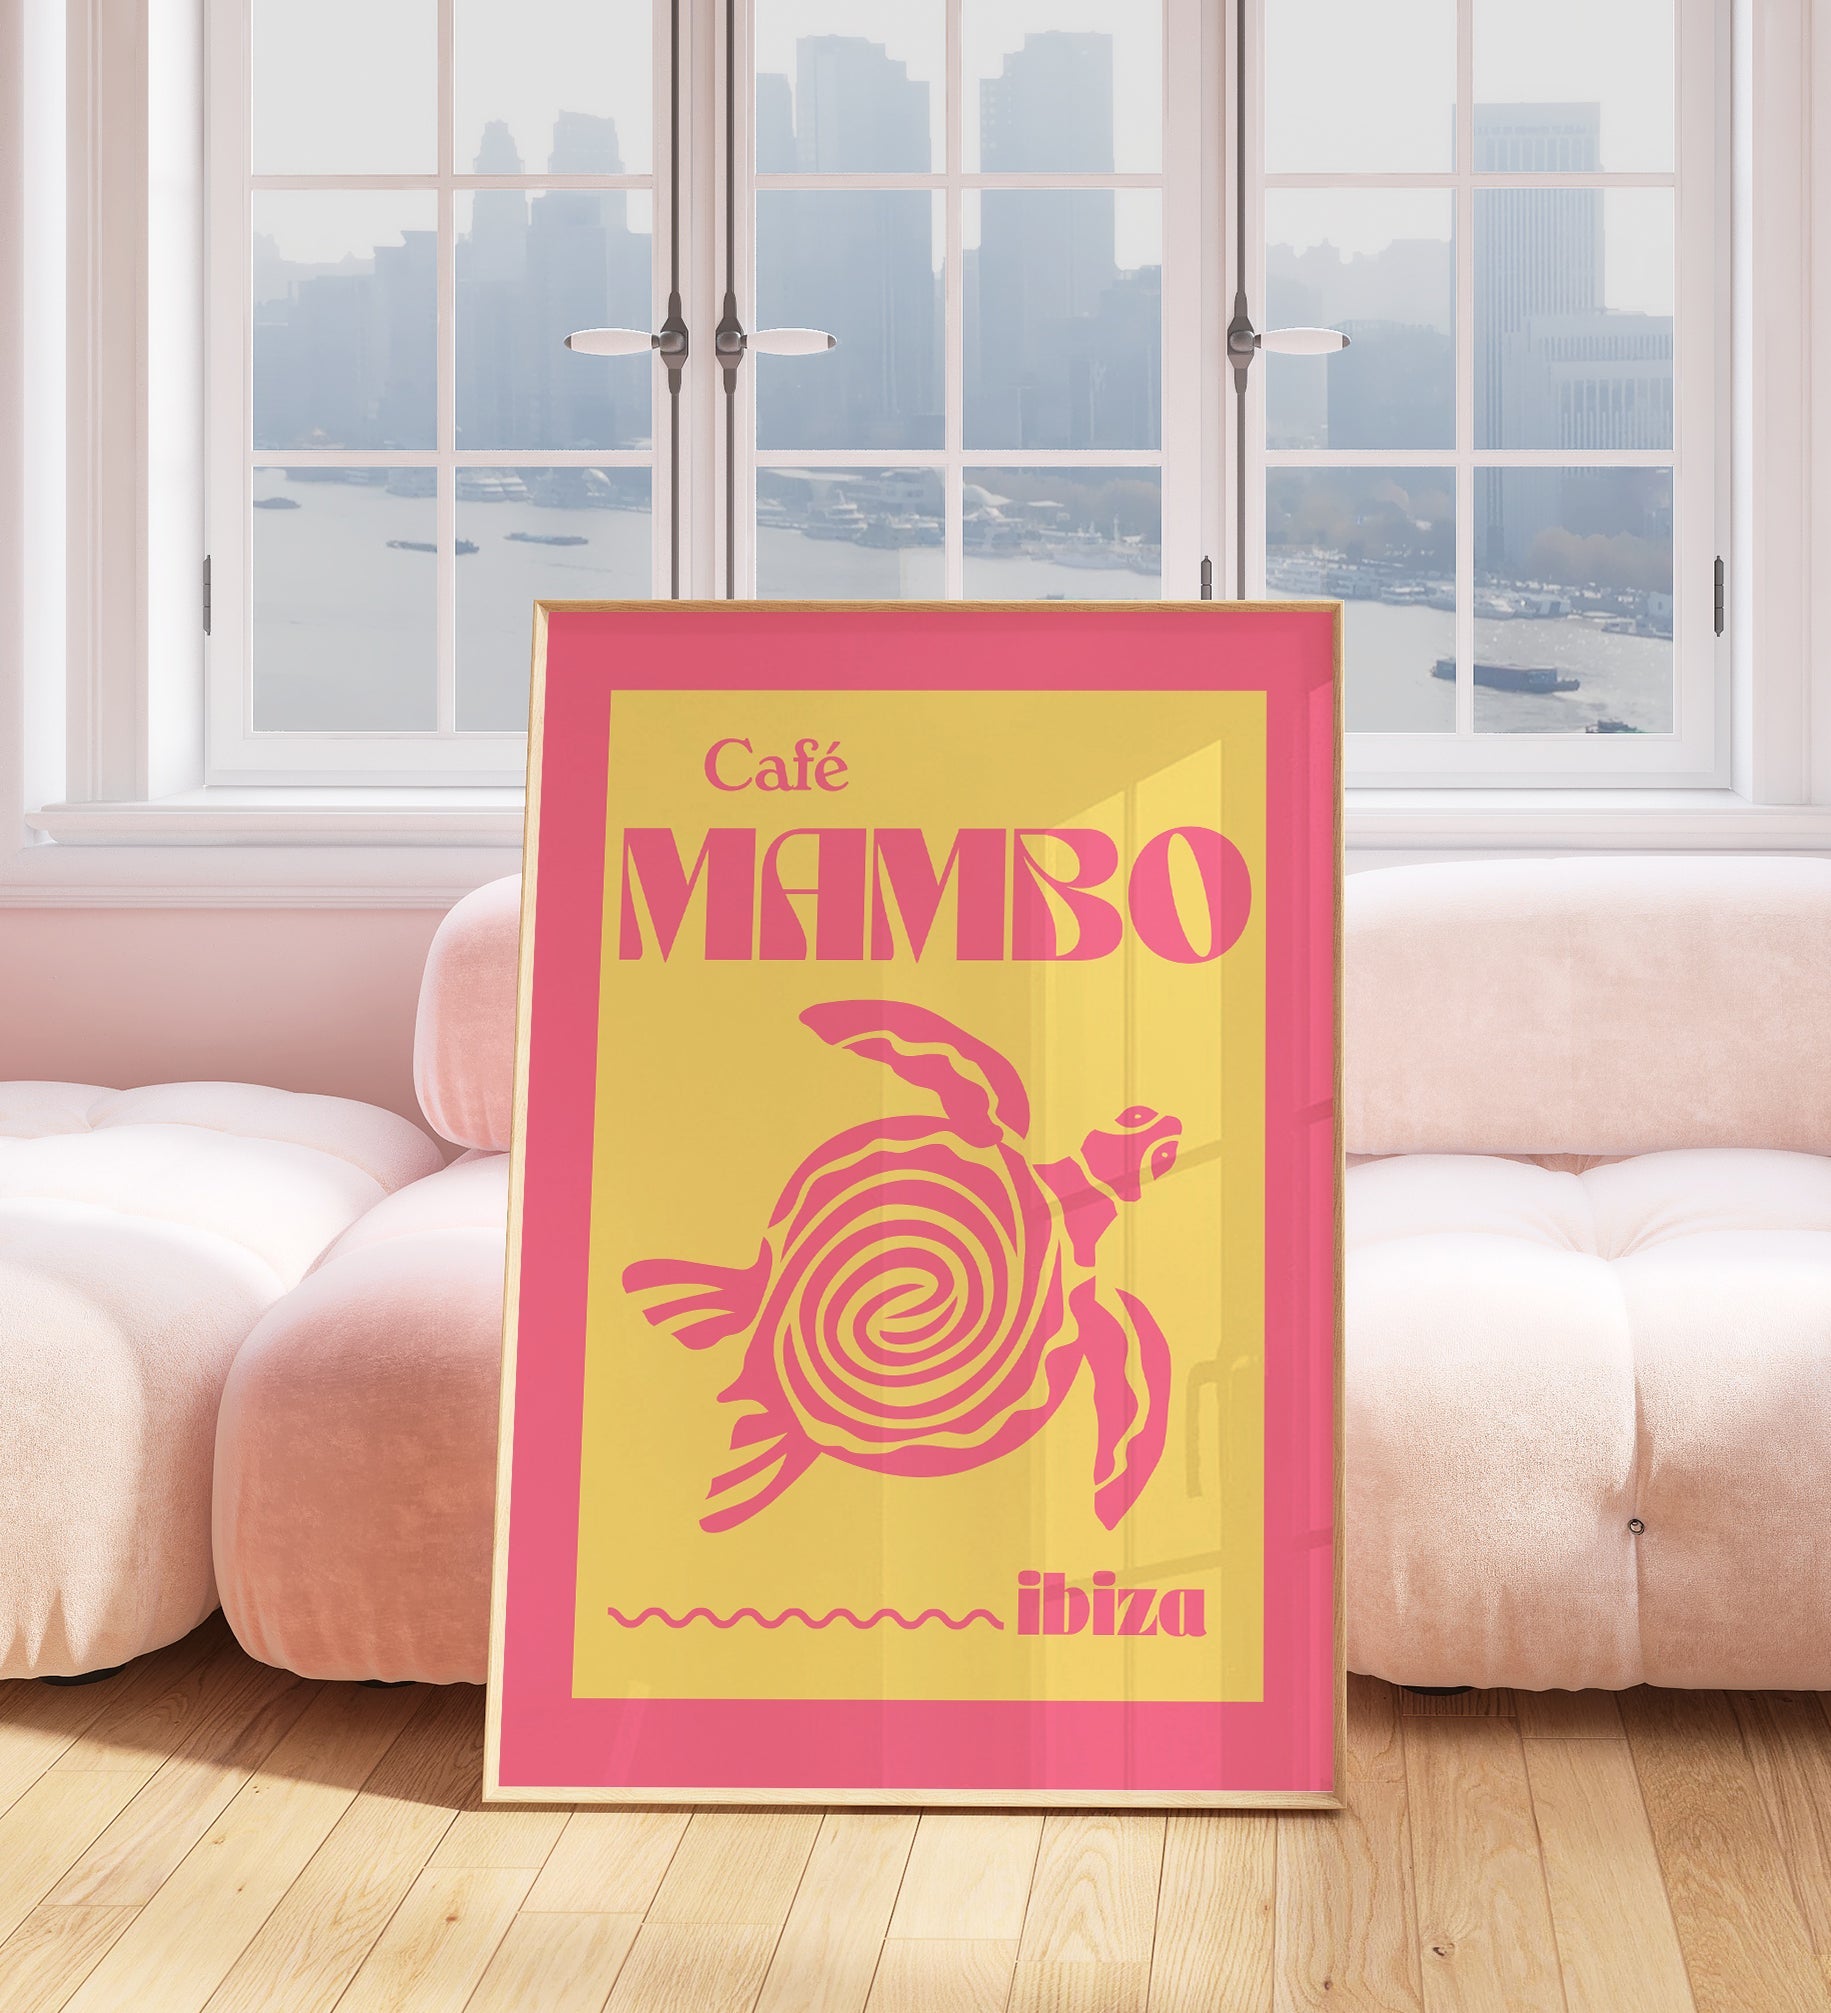 Cafe Mambo Ibiza Print